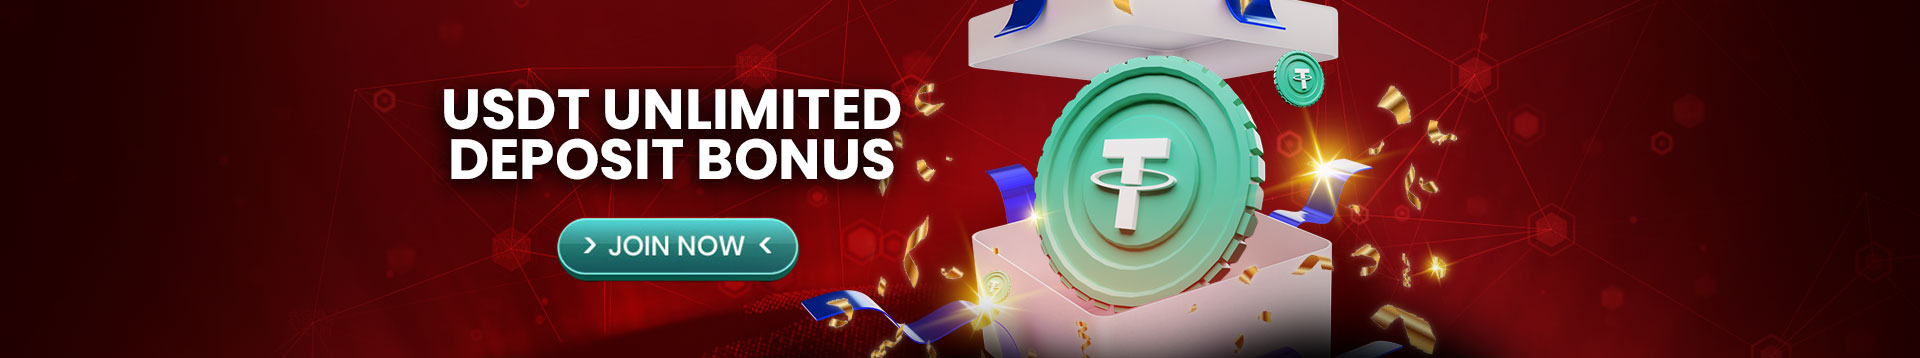 USDT Unlimited Deposit Bonus